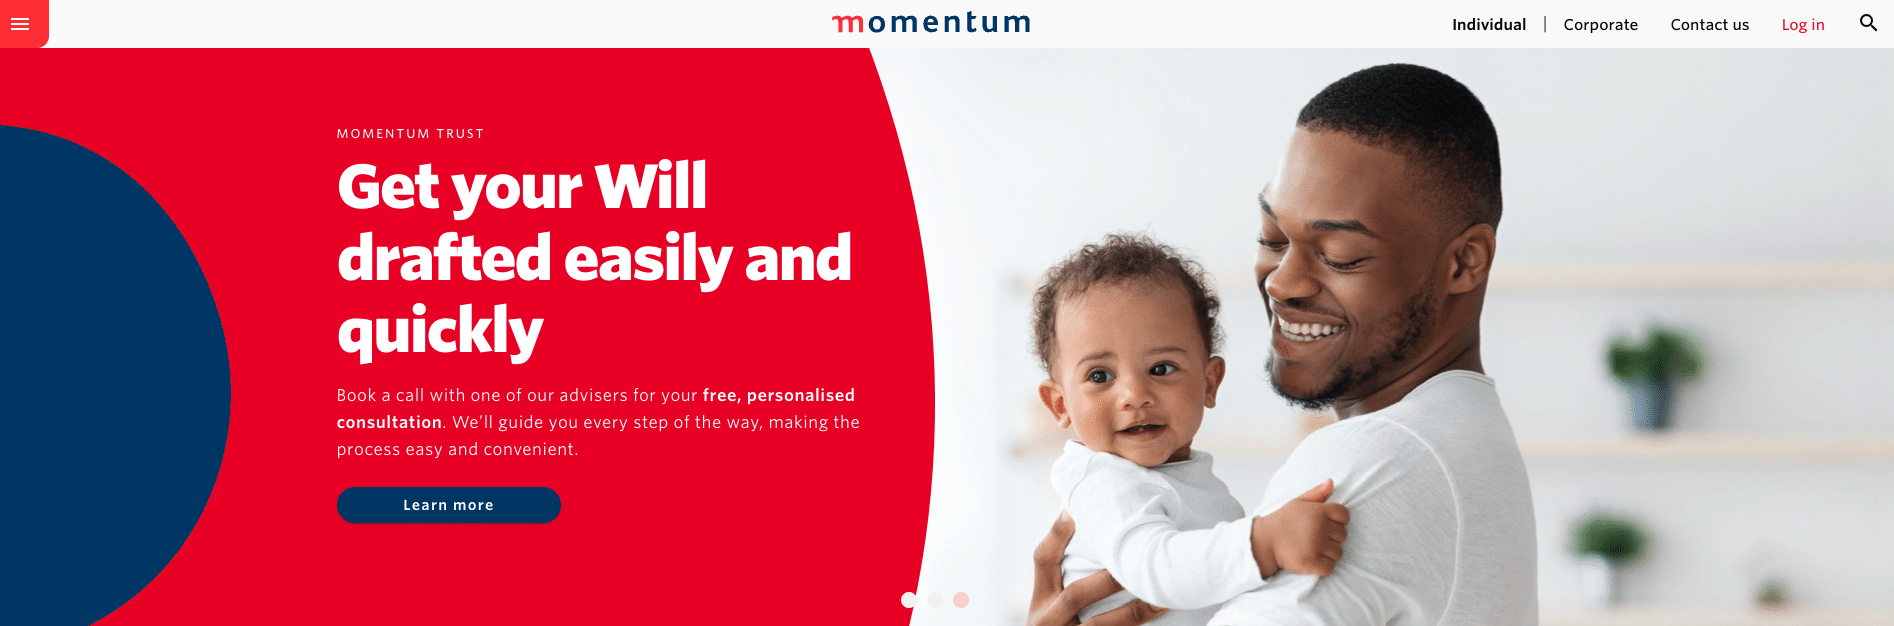 Momentum Medical Insurance for Kids